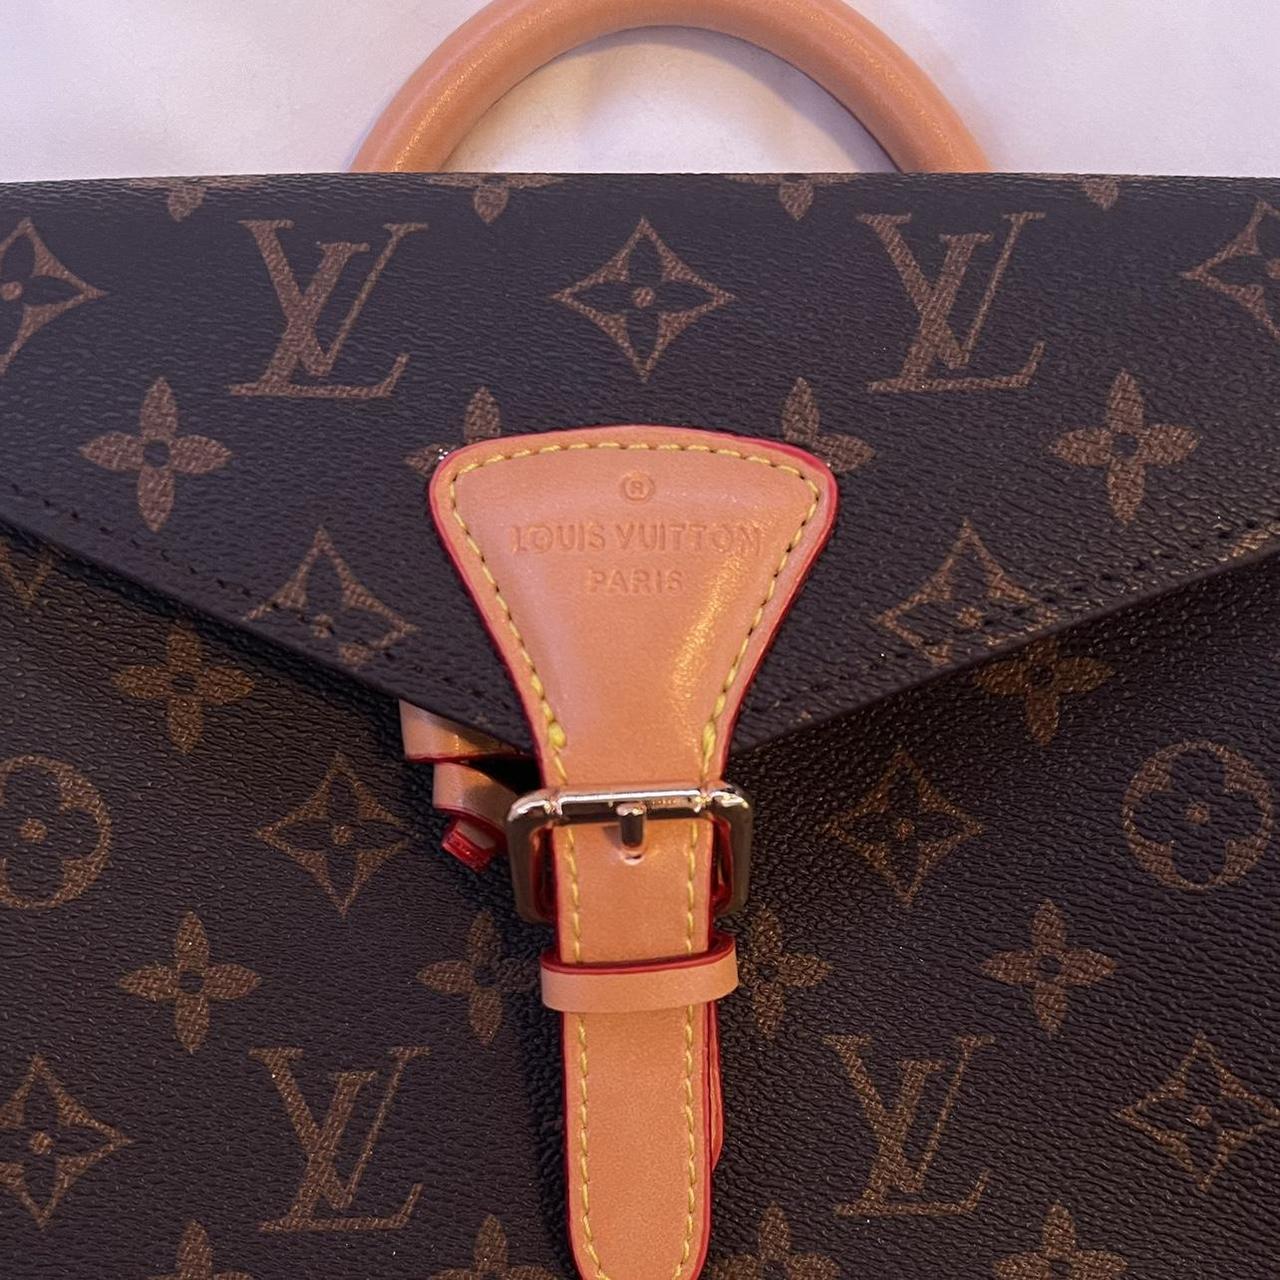 Shop Louis Vuitton MONOGRAM Montsouris bb (M45516, M45502) by SkyNS